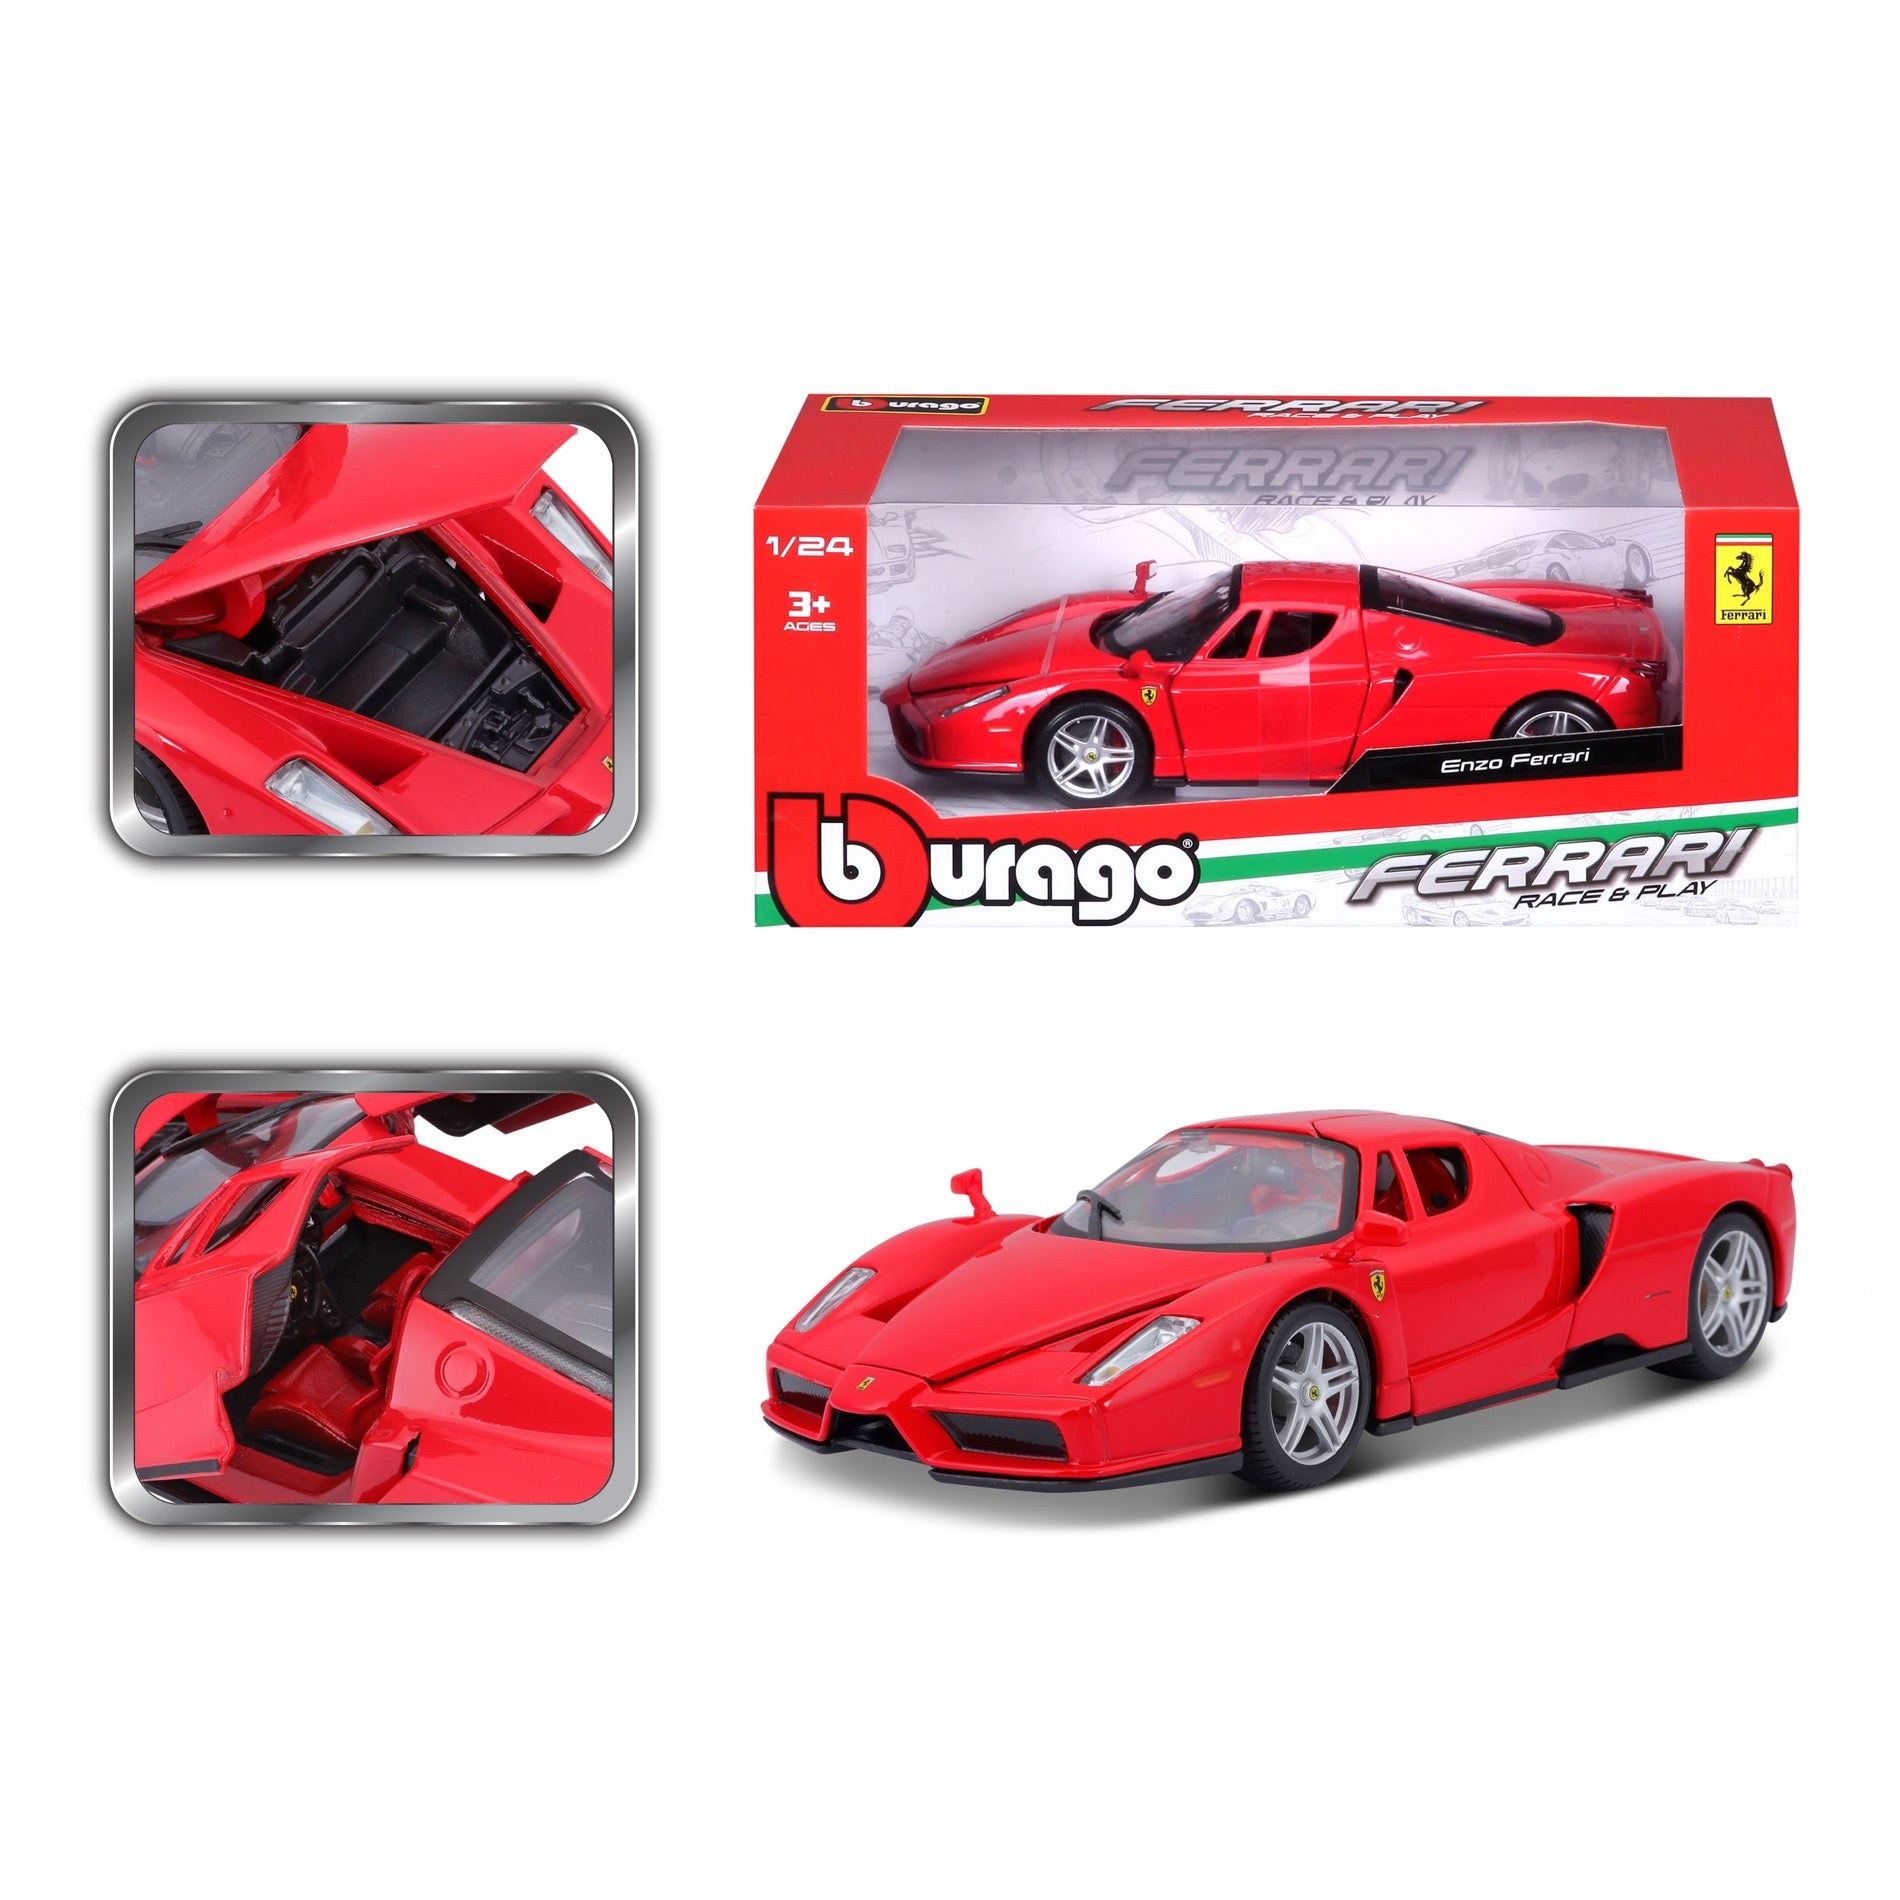 18-26006 Bburago Ferrari R&P - Enzo - Rosso - 1:24